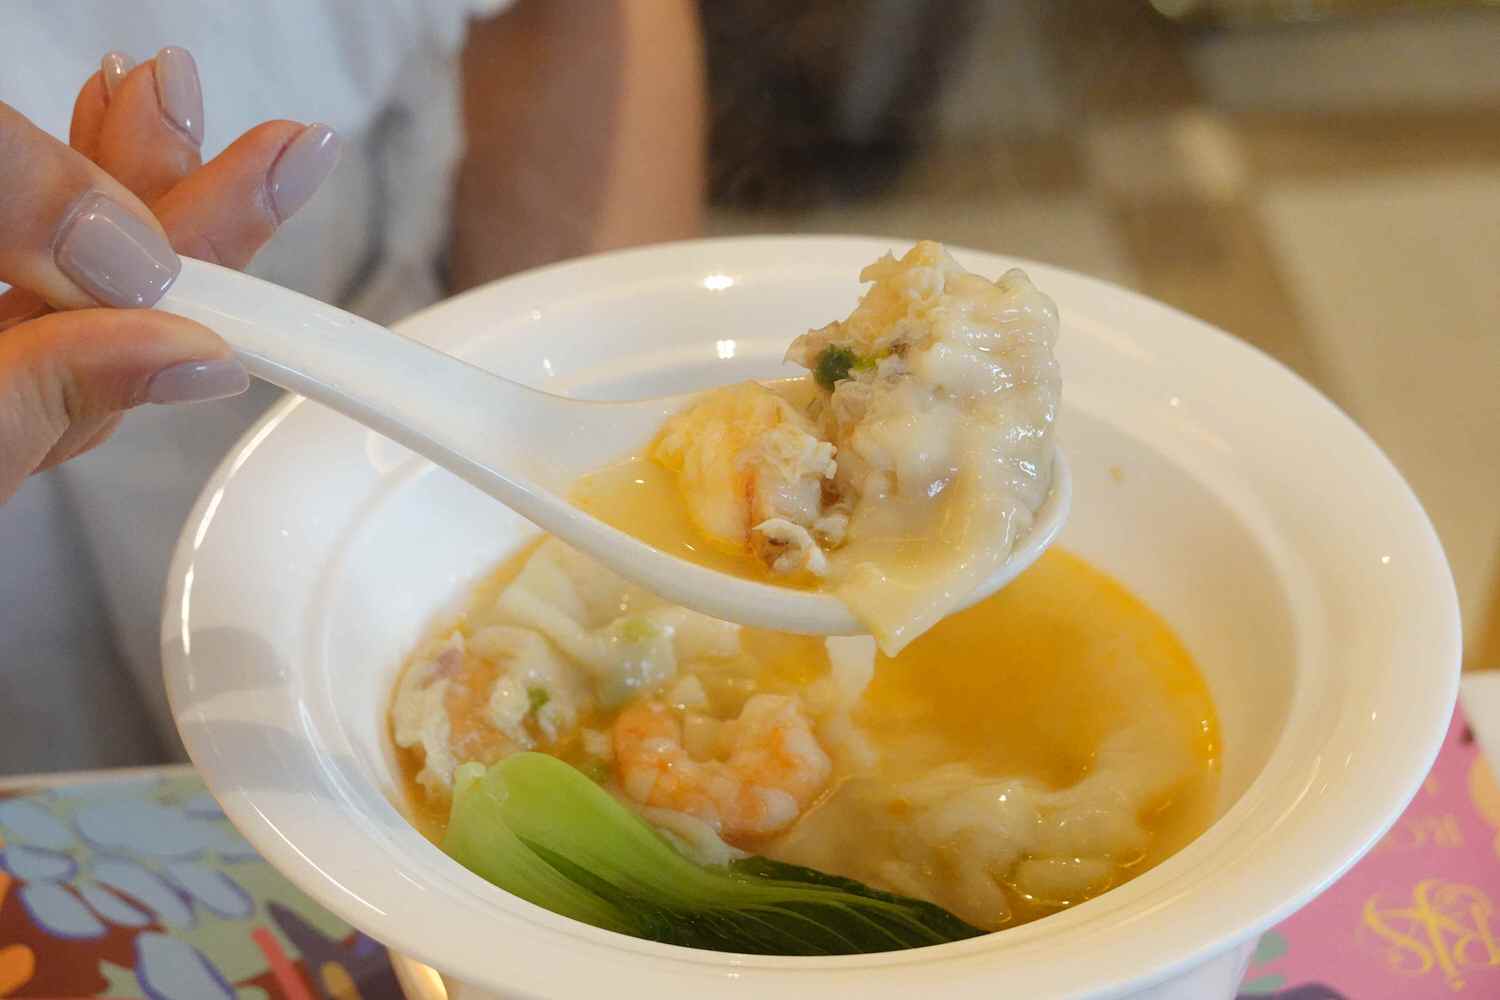 吹彈可破的湯包皮裡有龍蝦、大白蝦、蕈菇等豐富內餡的「龍蝦灌湯包」